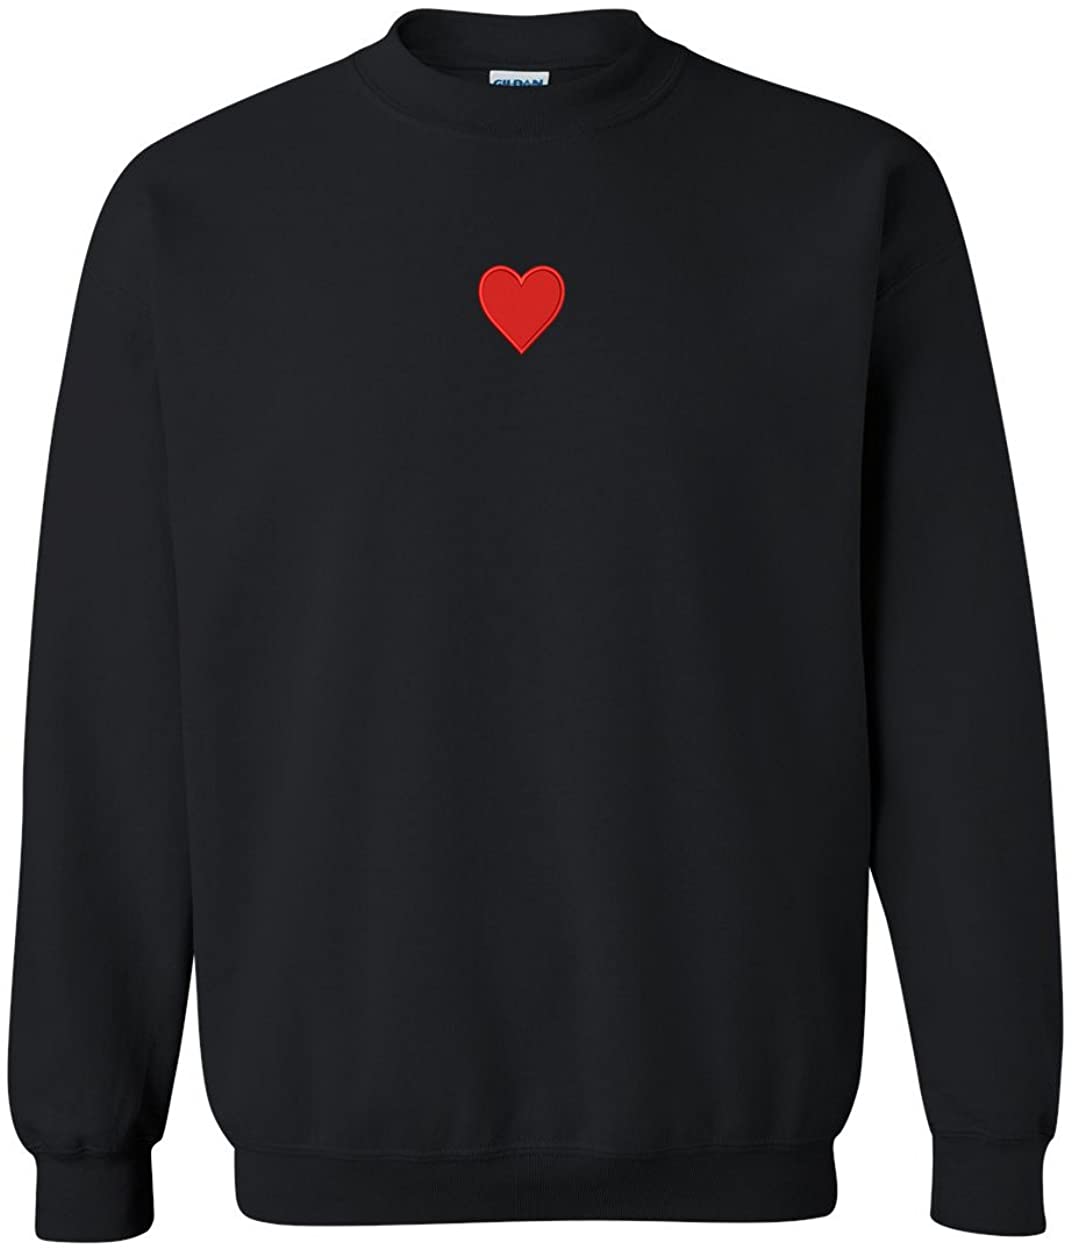 Trendy Apparel Shop Emoticon Heart Embroidered Crewneck Sweatshirt - Black - 2XL